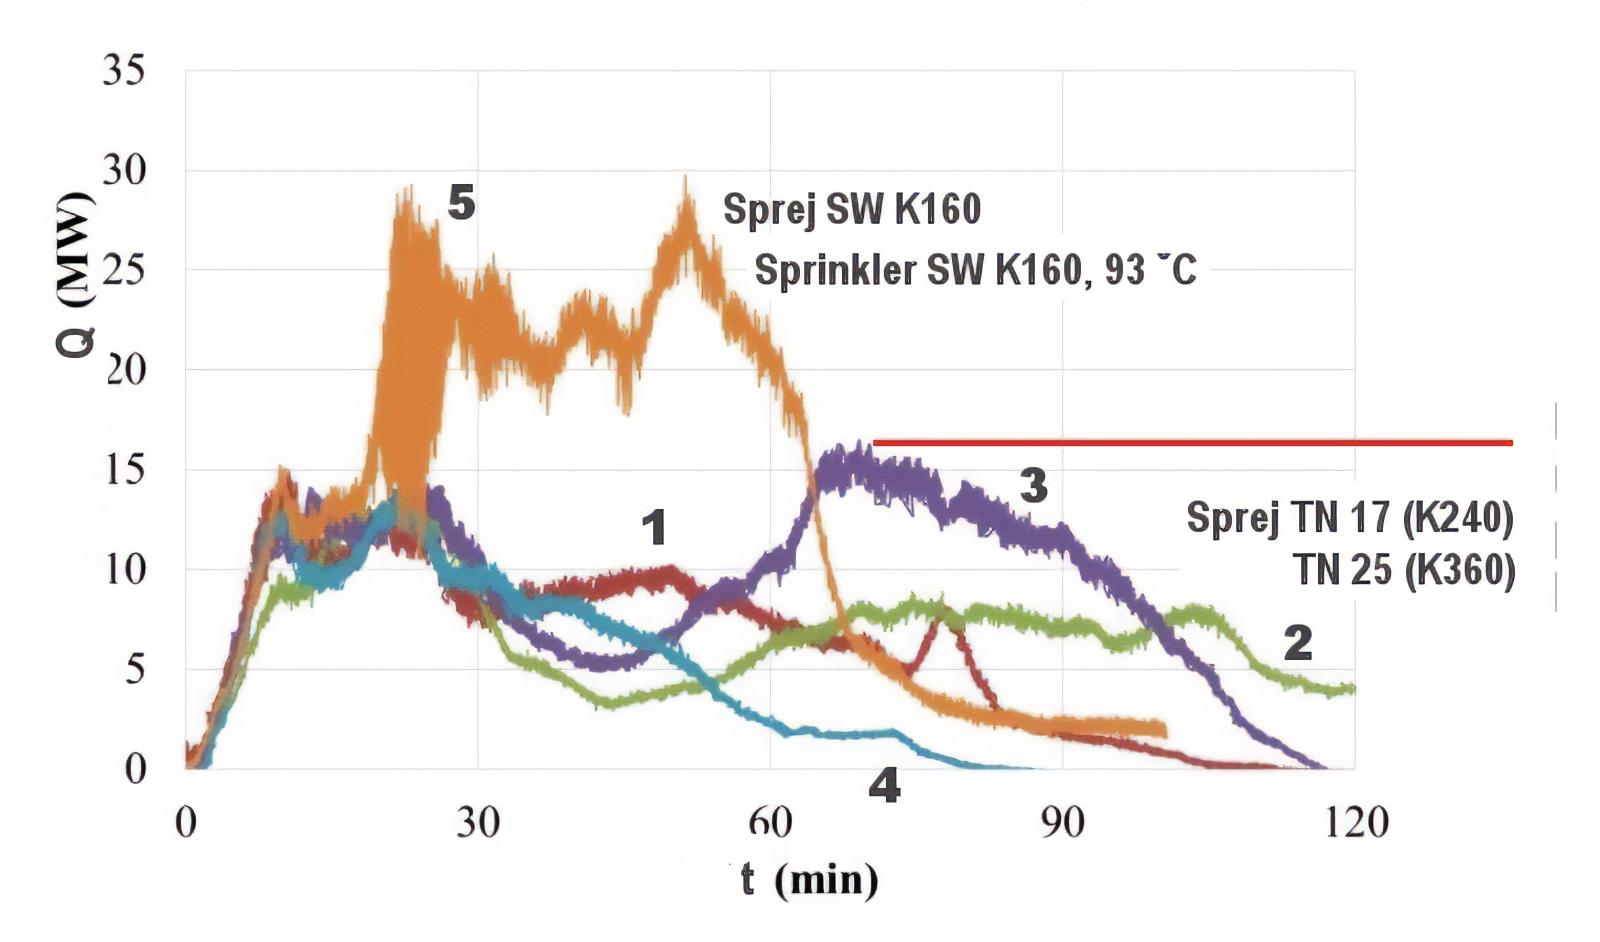 Rychlost uvolňování tepla HRR při požární zkoušce sprejového SHZ s hubicí TN-25 (1), TN-17 (2), TN-17 (3), T-25 (4), a SW-24 (5). Pozn.: při zkouškách(1), (4), a (2), (3), byly rozdílné tlaky na hubici.